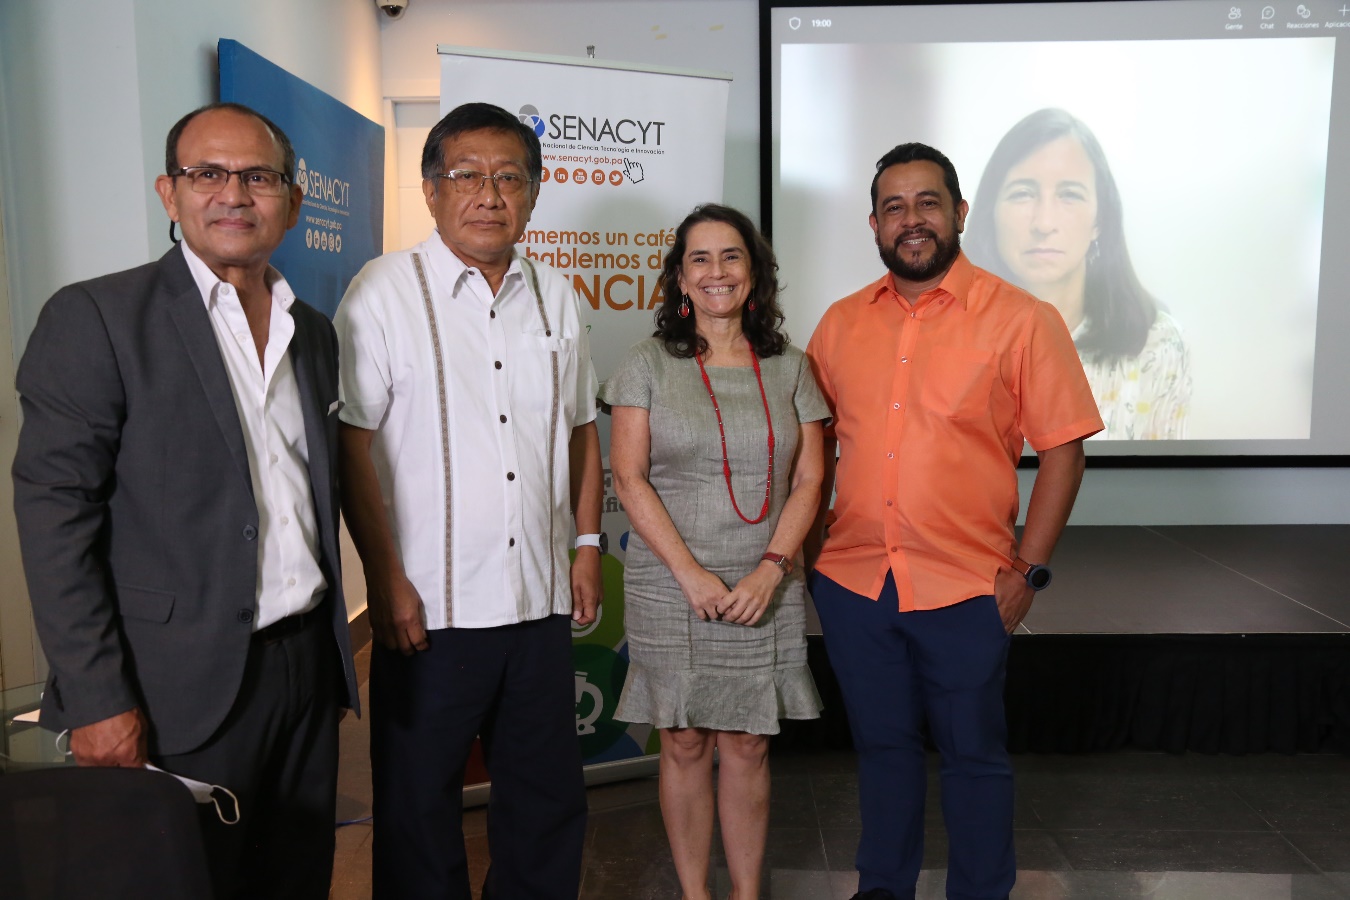 La Senacyt realizó el Café Científico “Pueblos indígenas de Panamá sus valores y problemas”